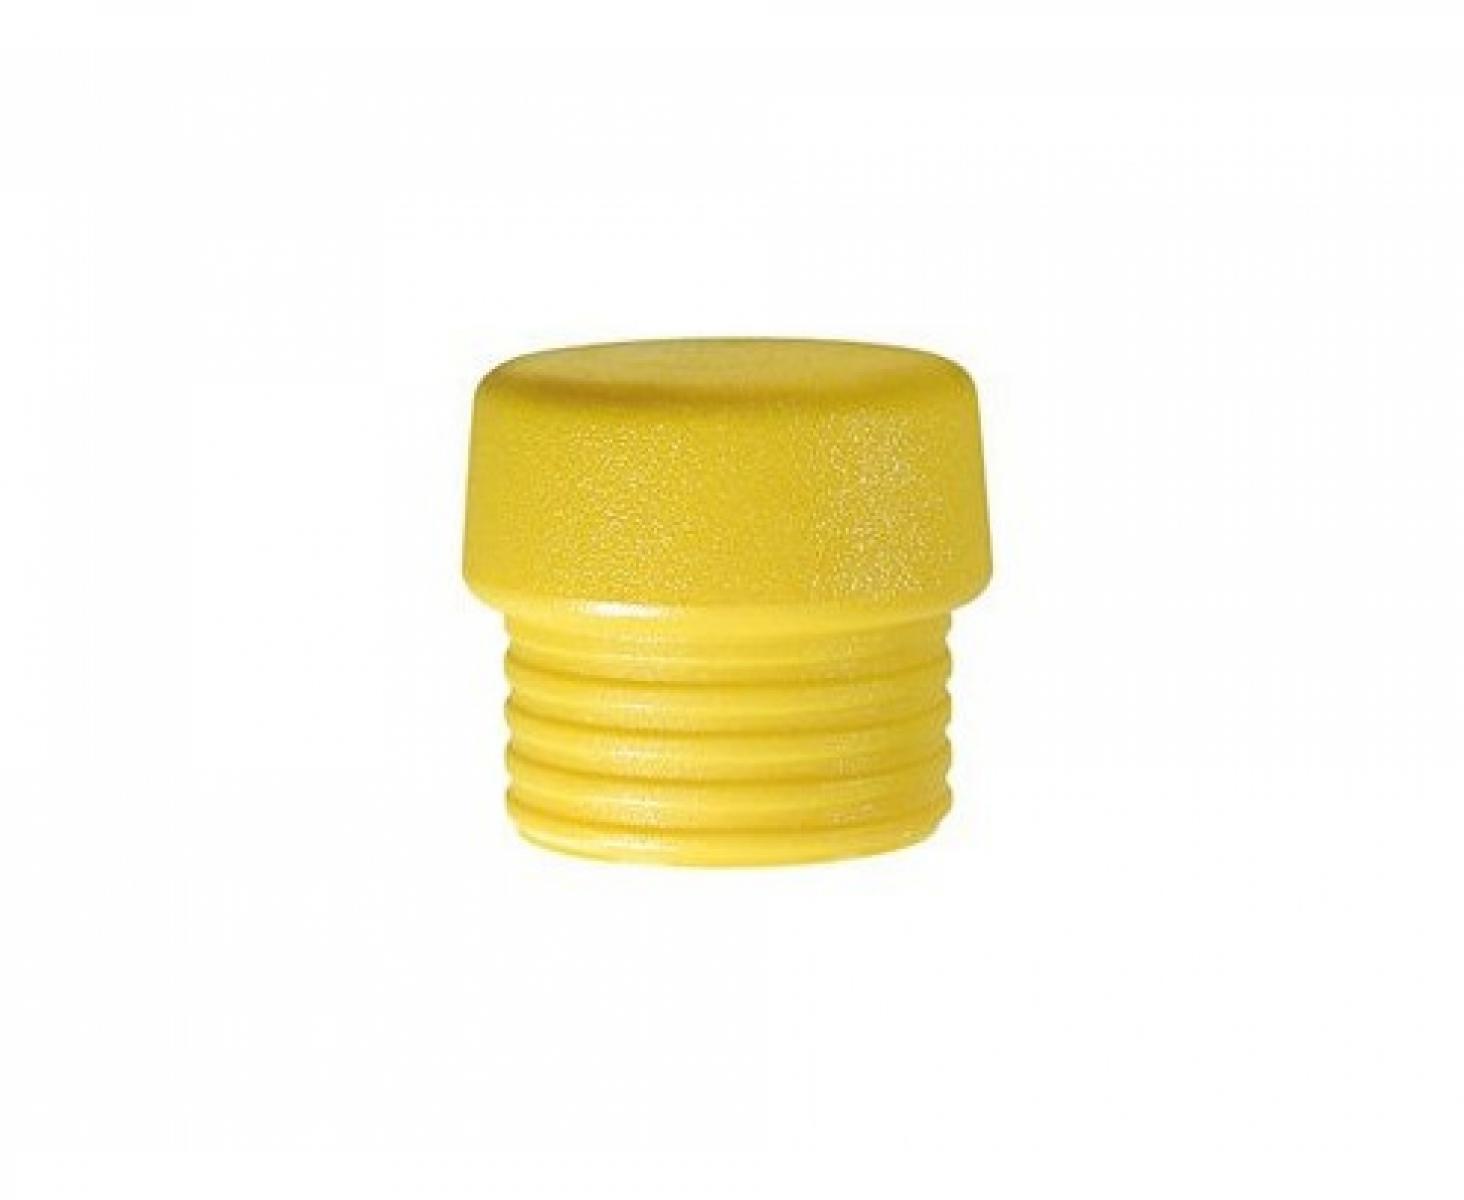 Головка желтая для молотка Wiha Safety 831-5 26430 из среднетвердого полиуретана